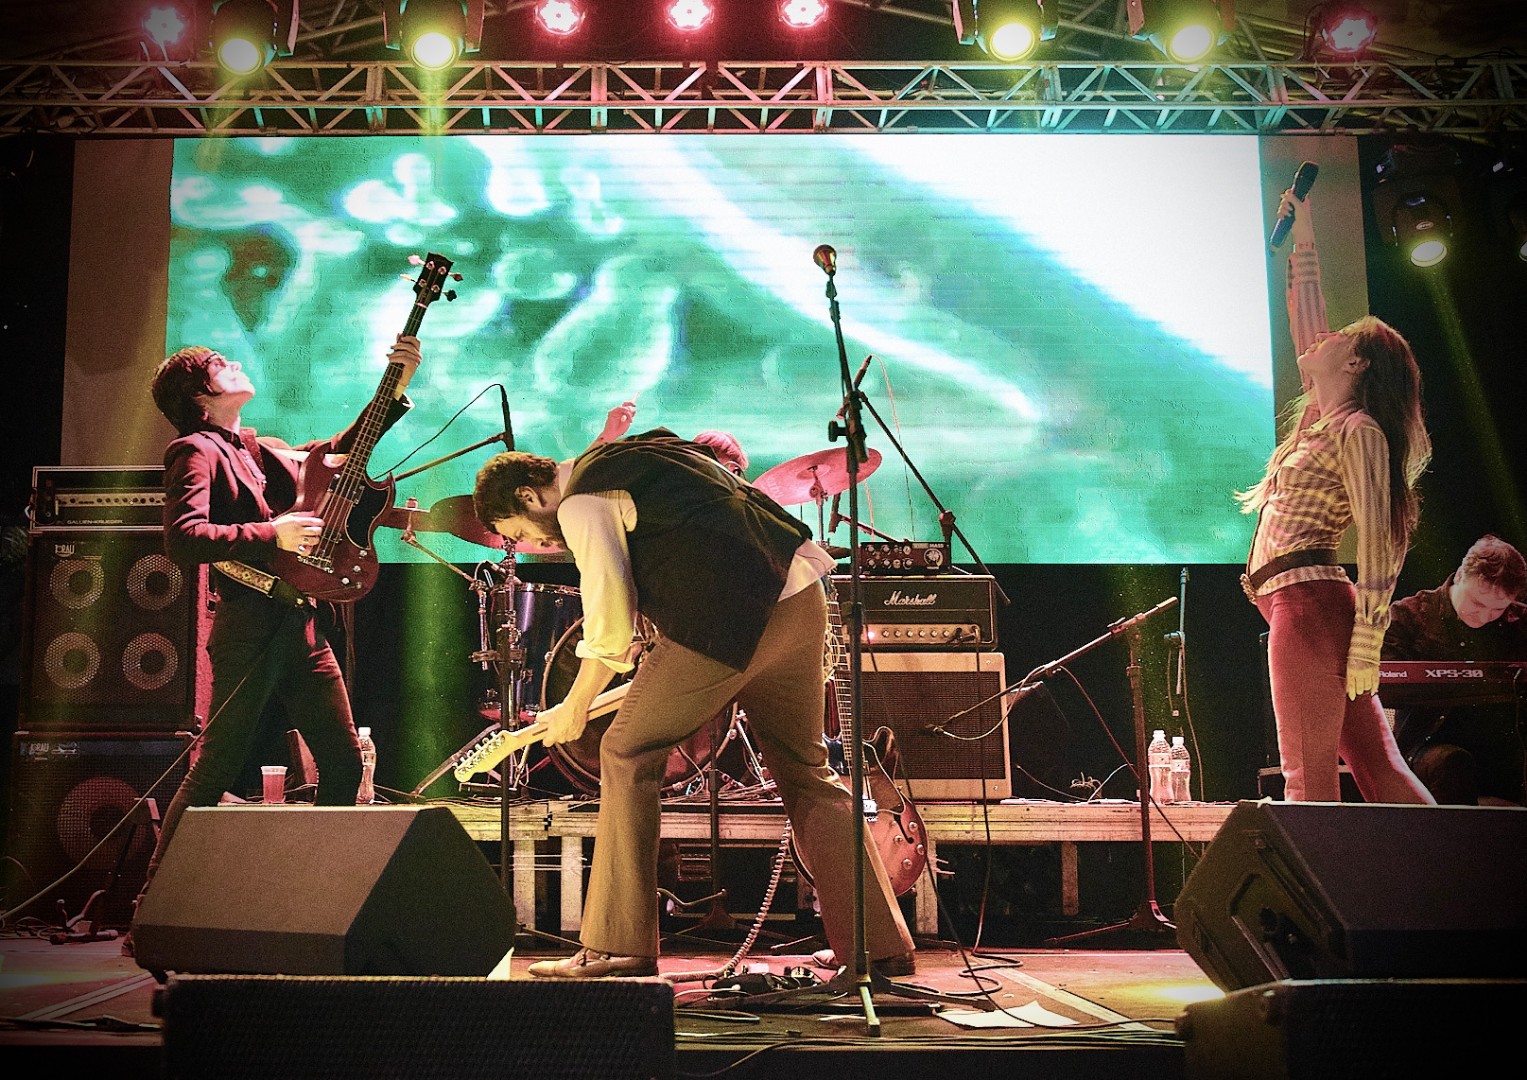 Ator e cantor Gabriel Braga Nunes tocando guitarra em um palco com a sua banda.